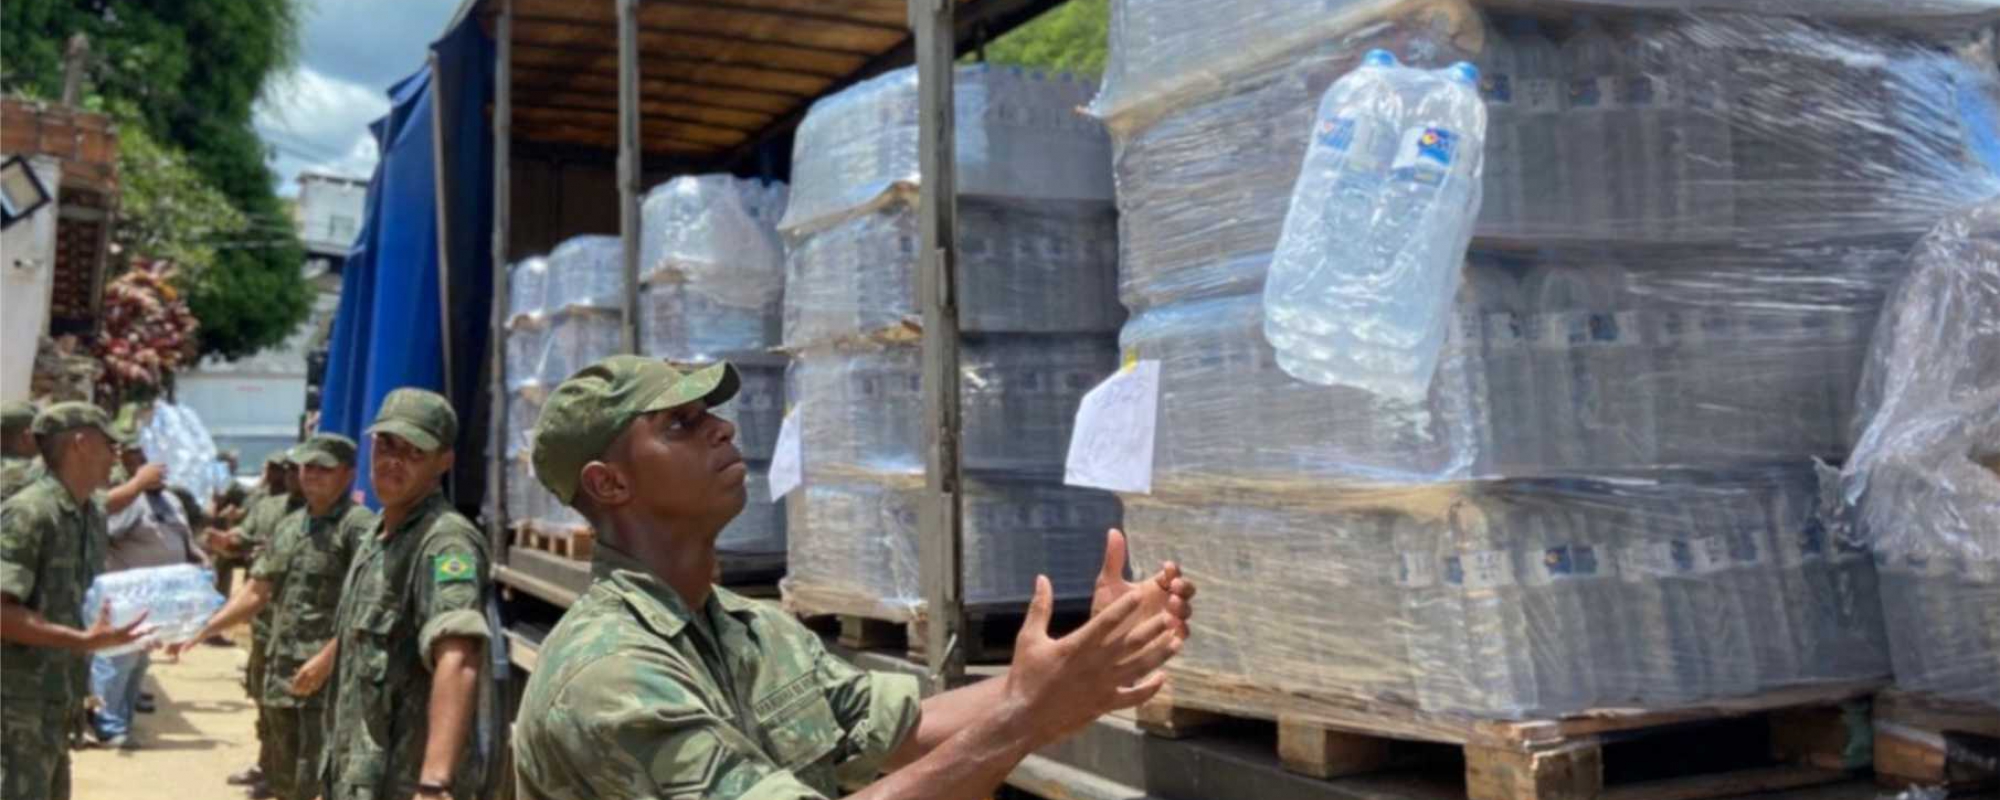 Marinha do Brasil  auxilia na logística de  entrega de donativos  em Barra do Piraí